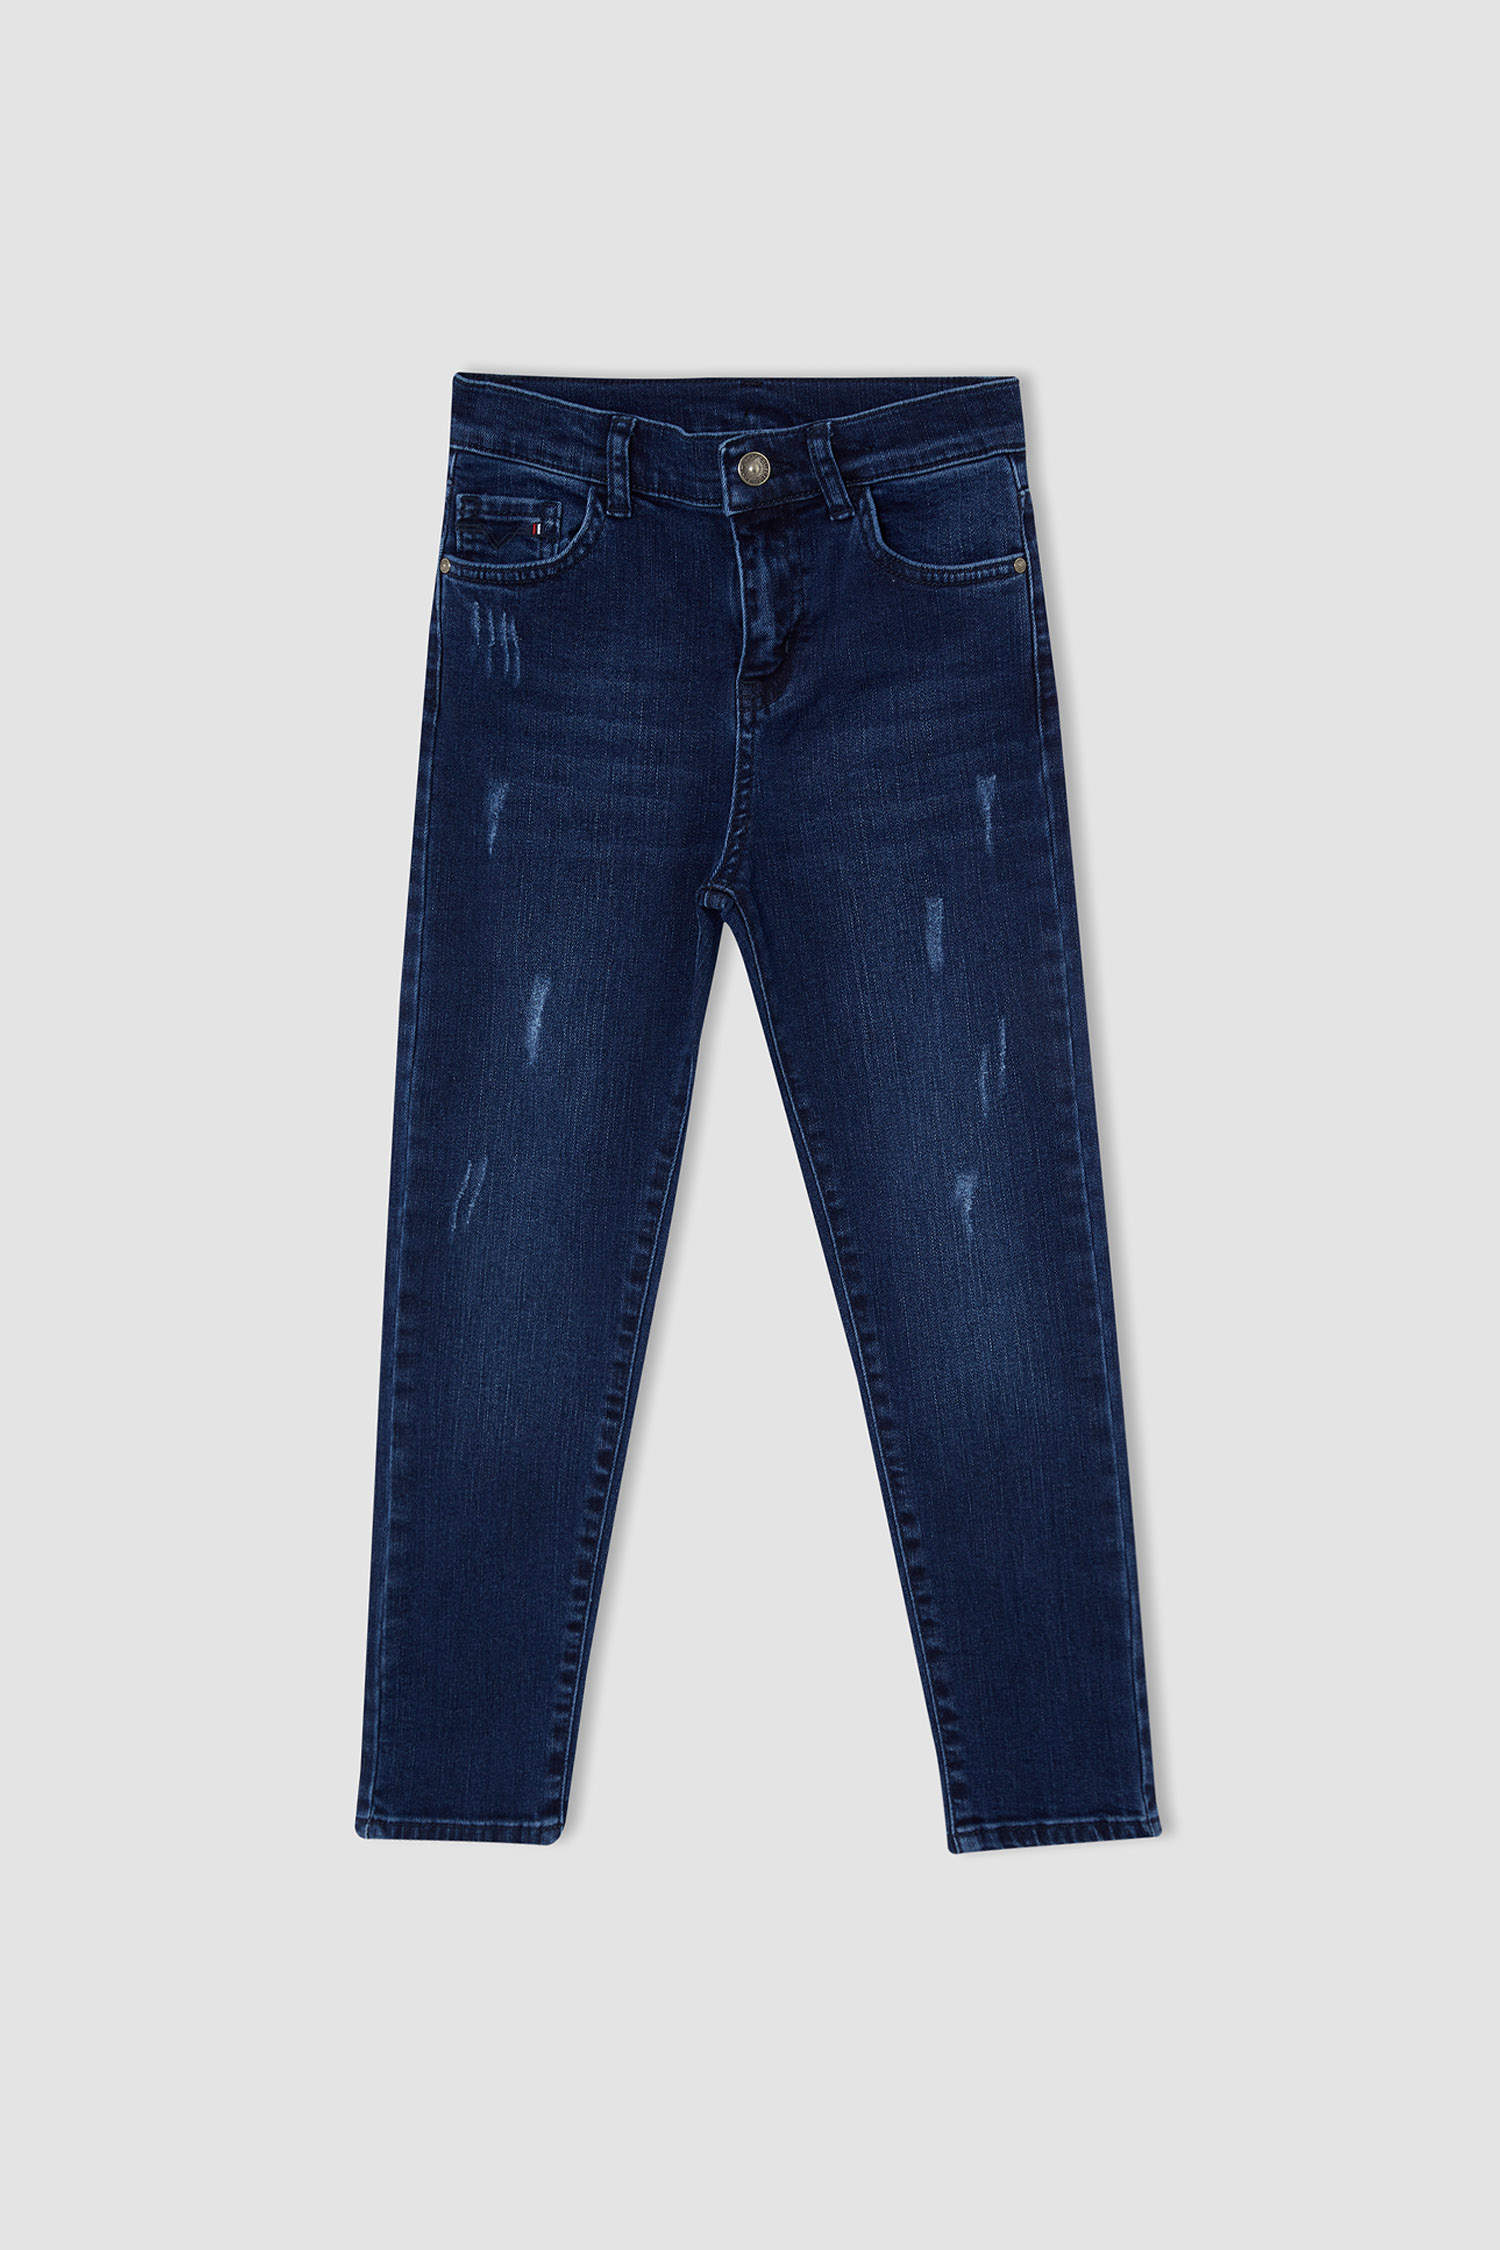 Blue Boys & Teens Slim Fit Jean Pants 2342288 | DeFacto